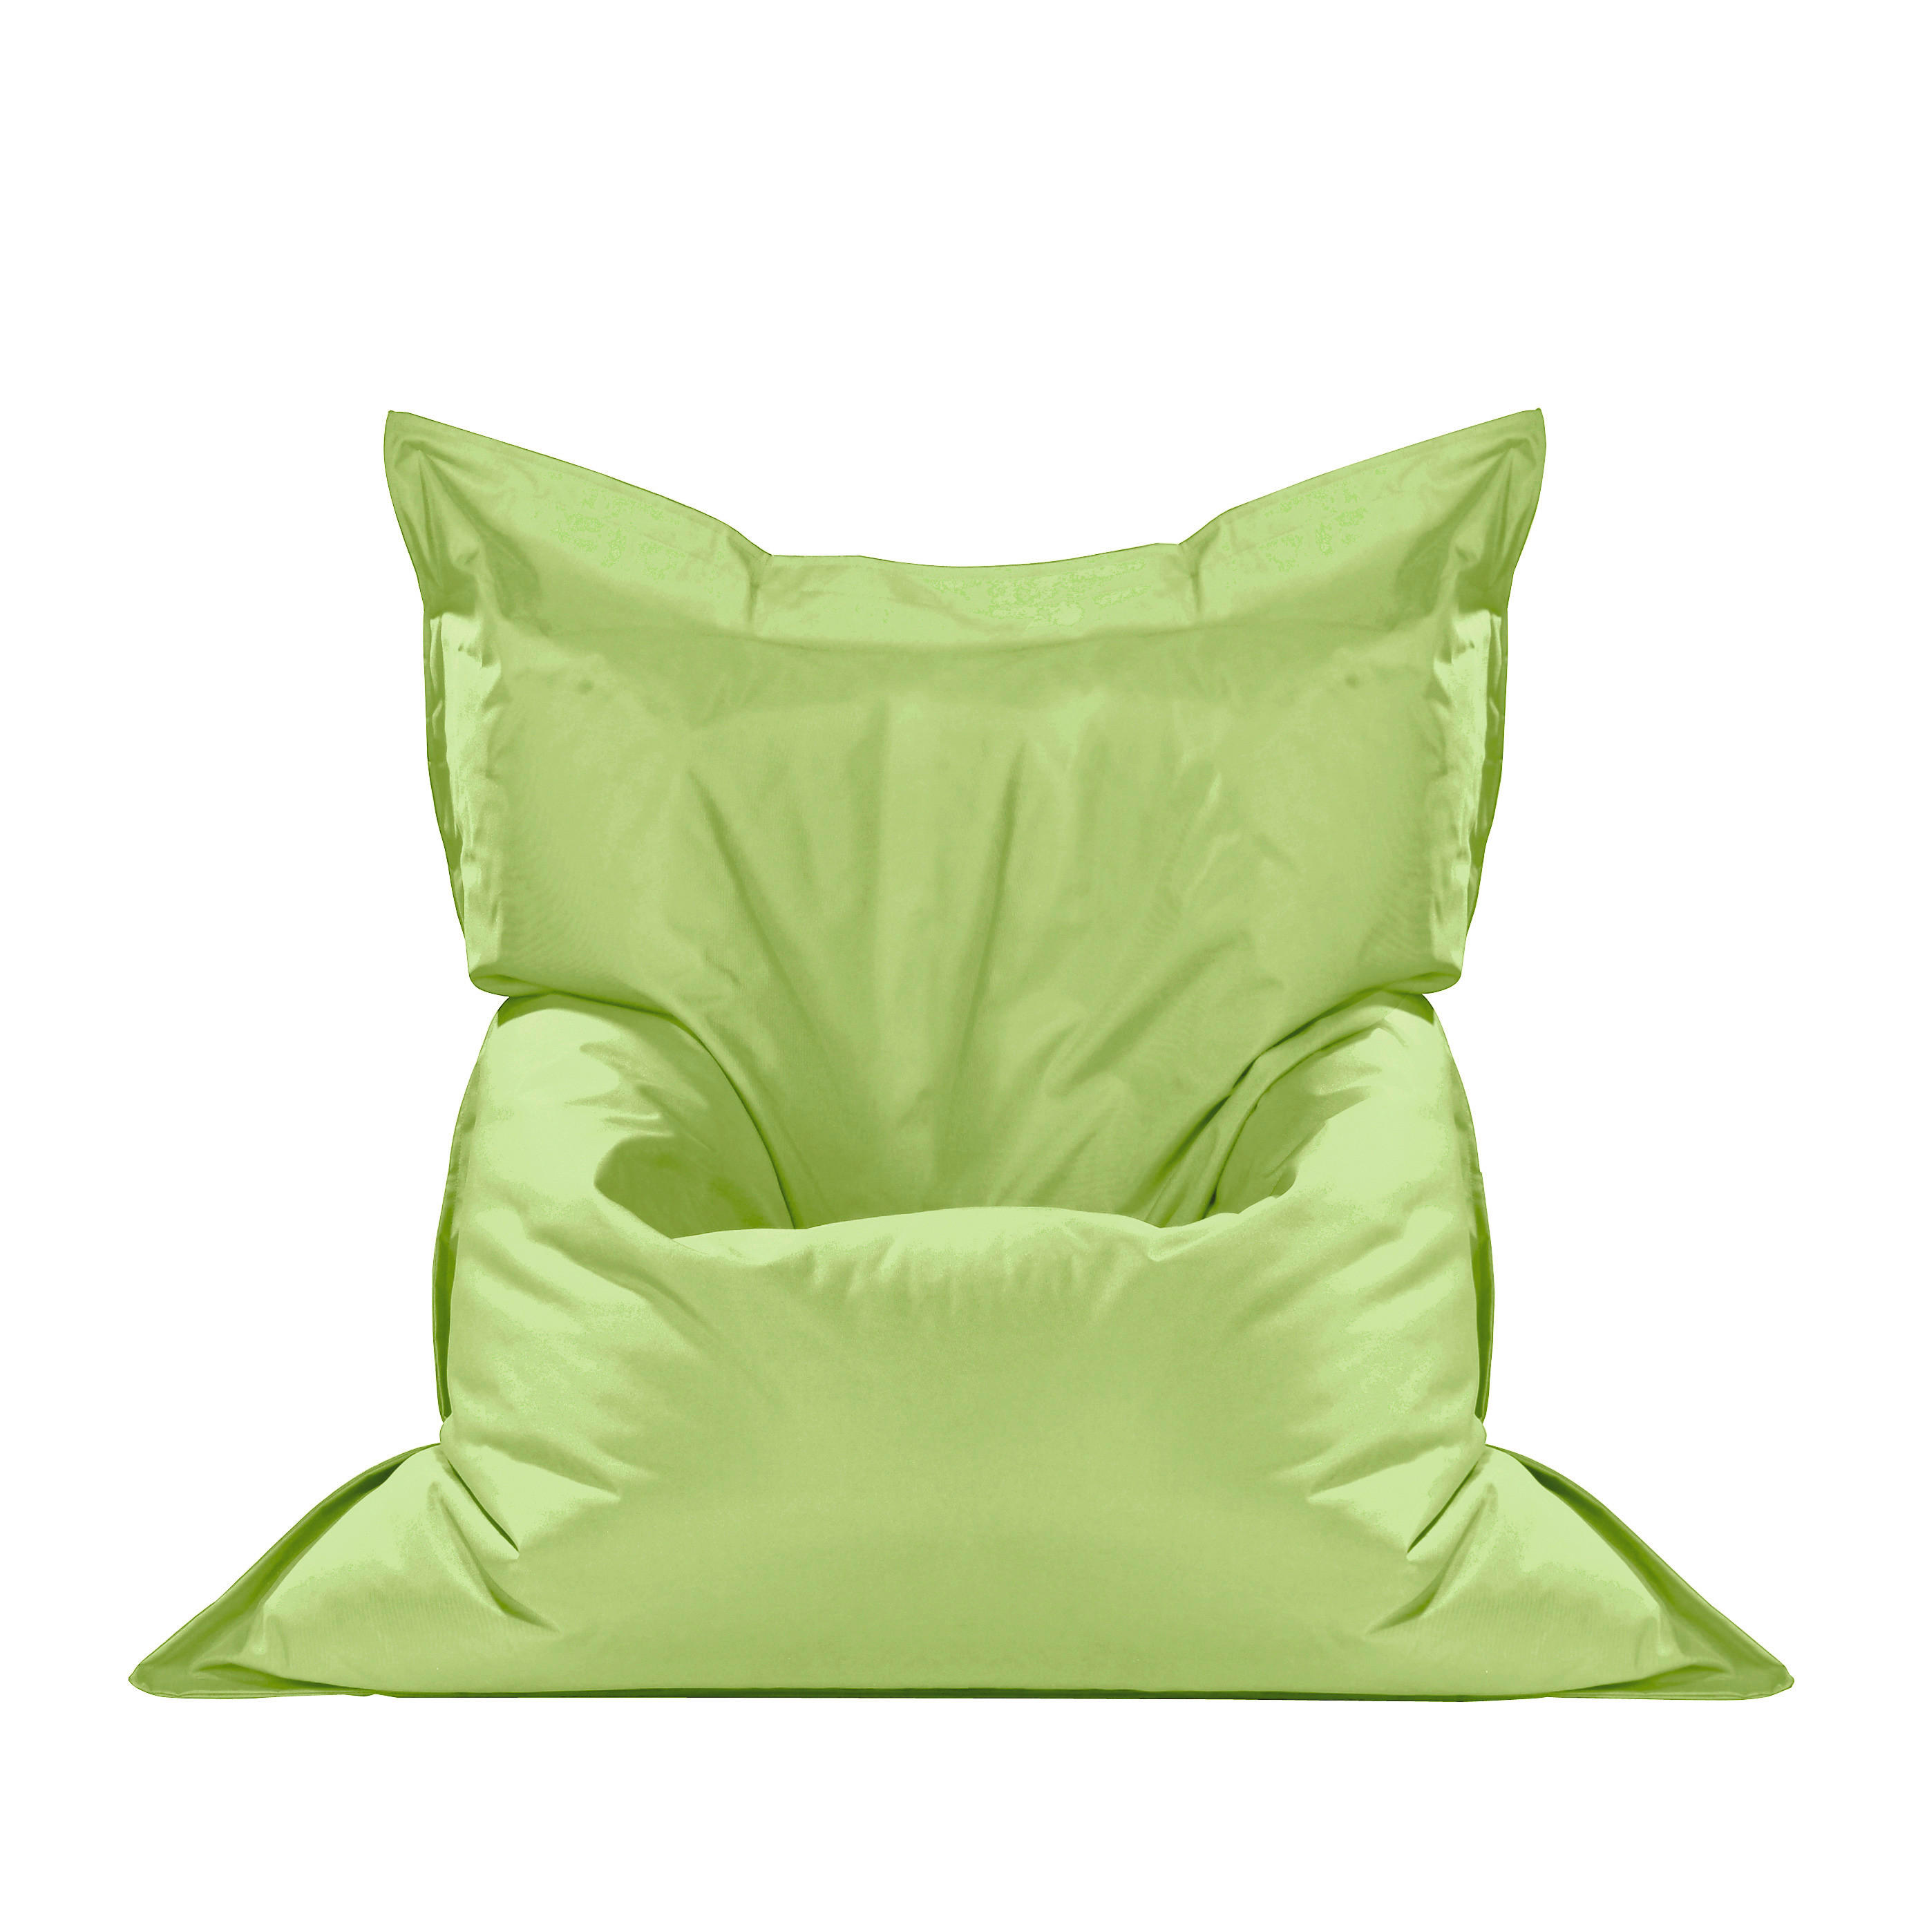 SEDACÍ PYTEL, zelená - zelená, Design, textil (140/180cm) - Boxxx